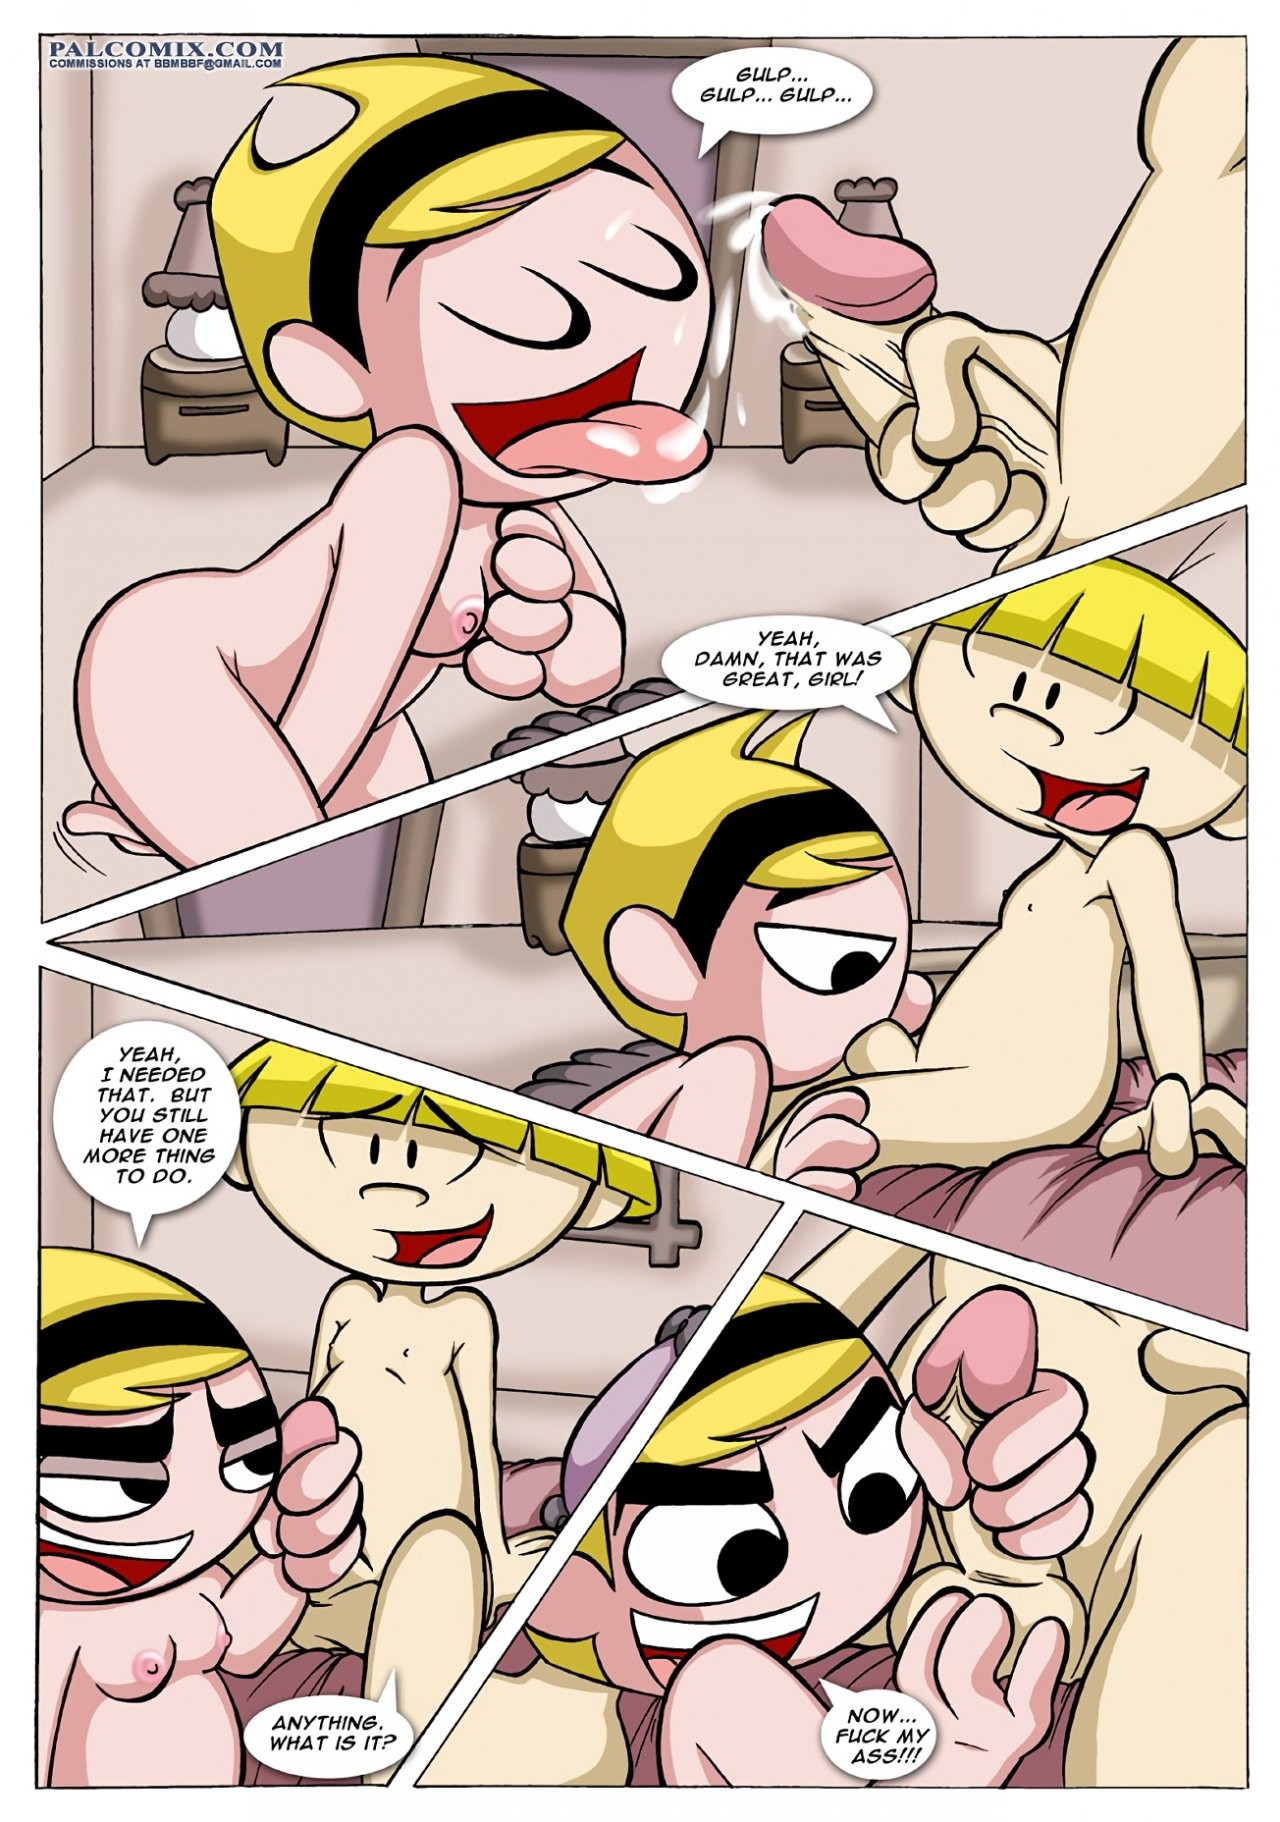 The Sex Adventures of the Kids Next Door 01 porn comic picture 7